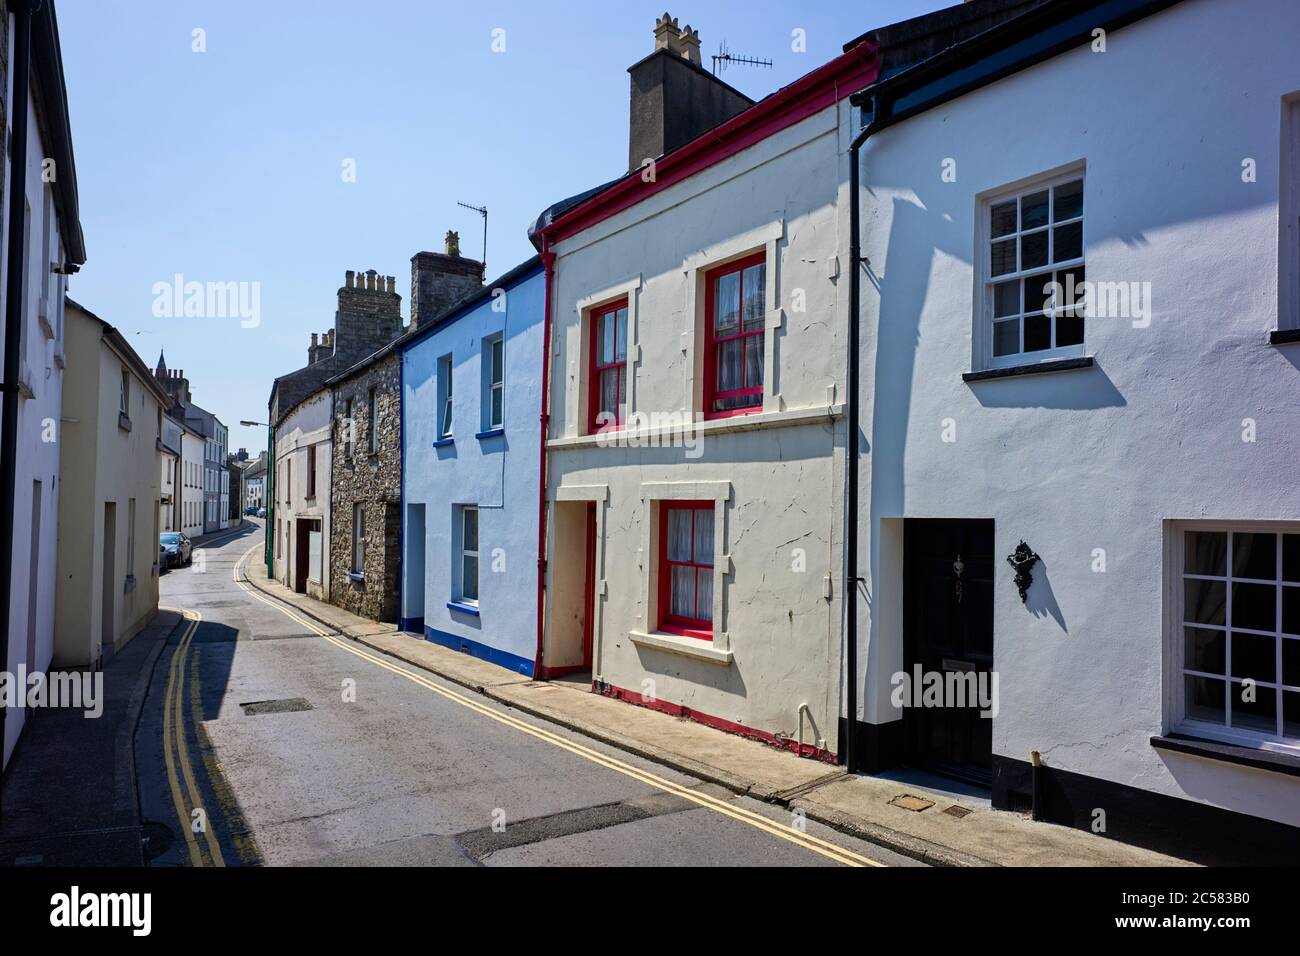 Casa tradizionale in stile Manx 65 Malew Street, Castletown, Isle of Man con finestre originali in frassino dipinte in rosso e crema Foto Stock